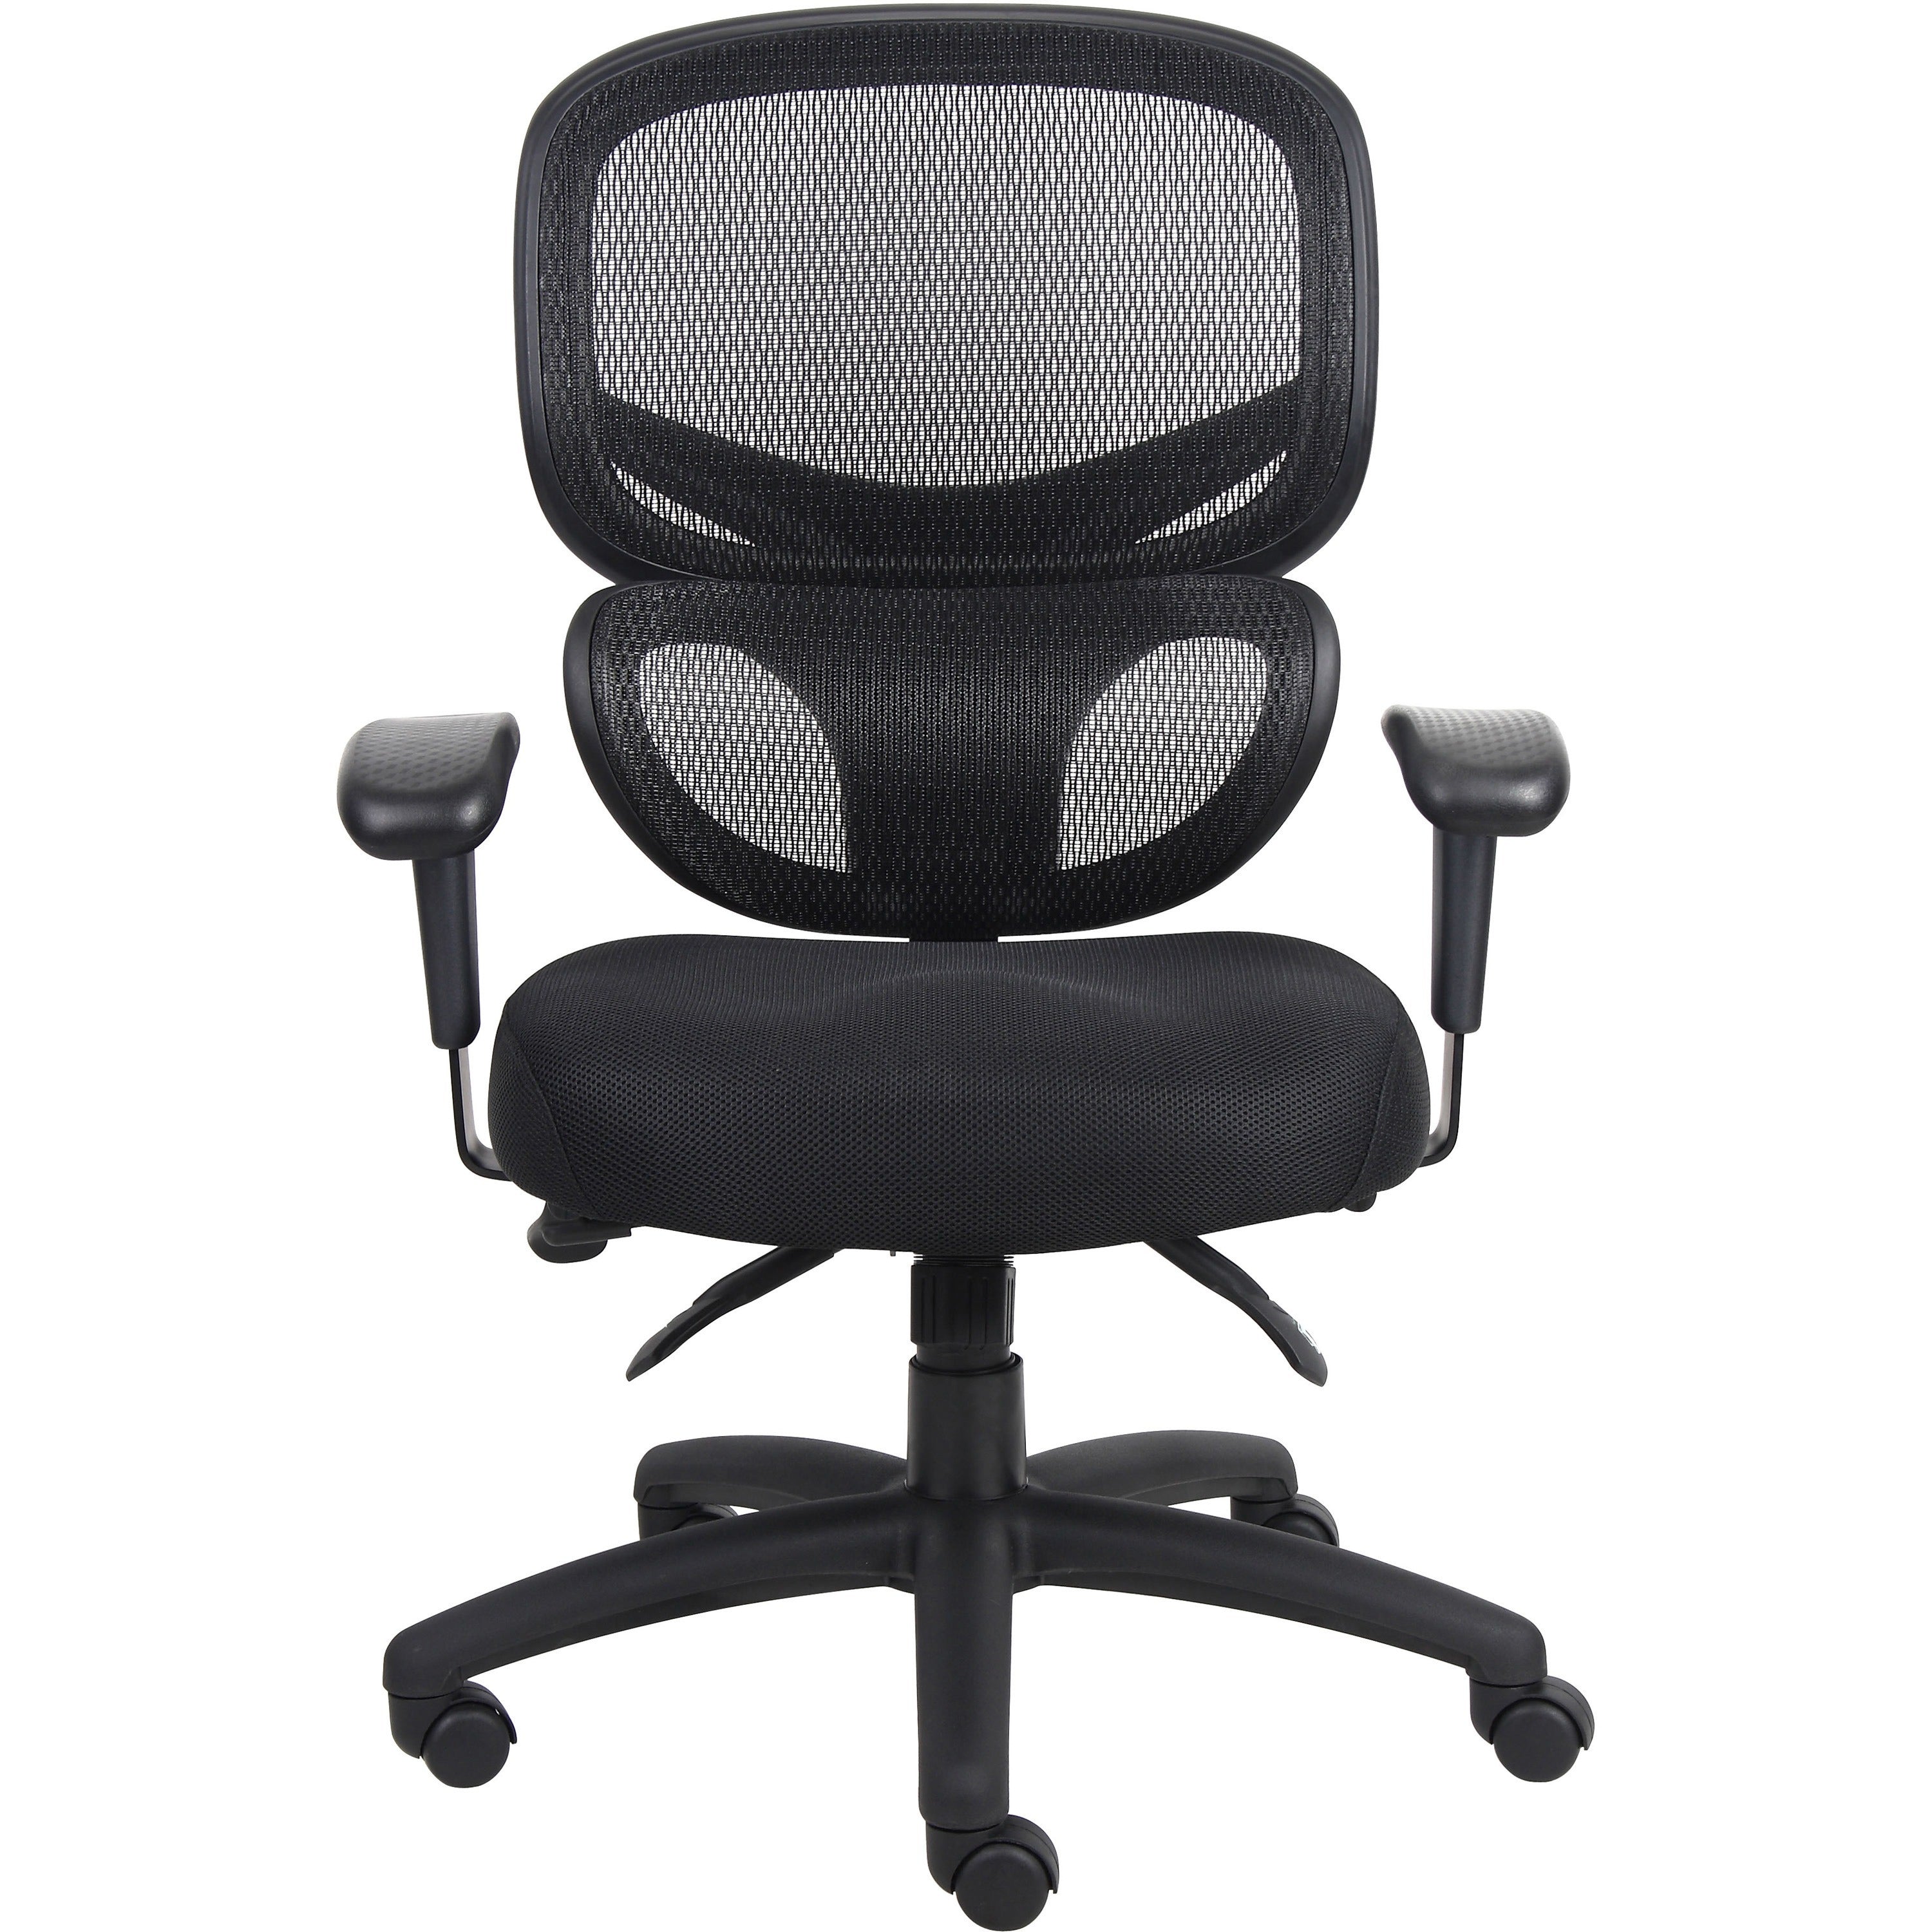 Lorell Mesh-Back Executive Chair - Black Fabric Seat - Black Mesh Back - 5-star Base - Black, Silver - Fabric - 1 Each - 